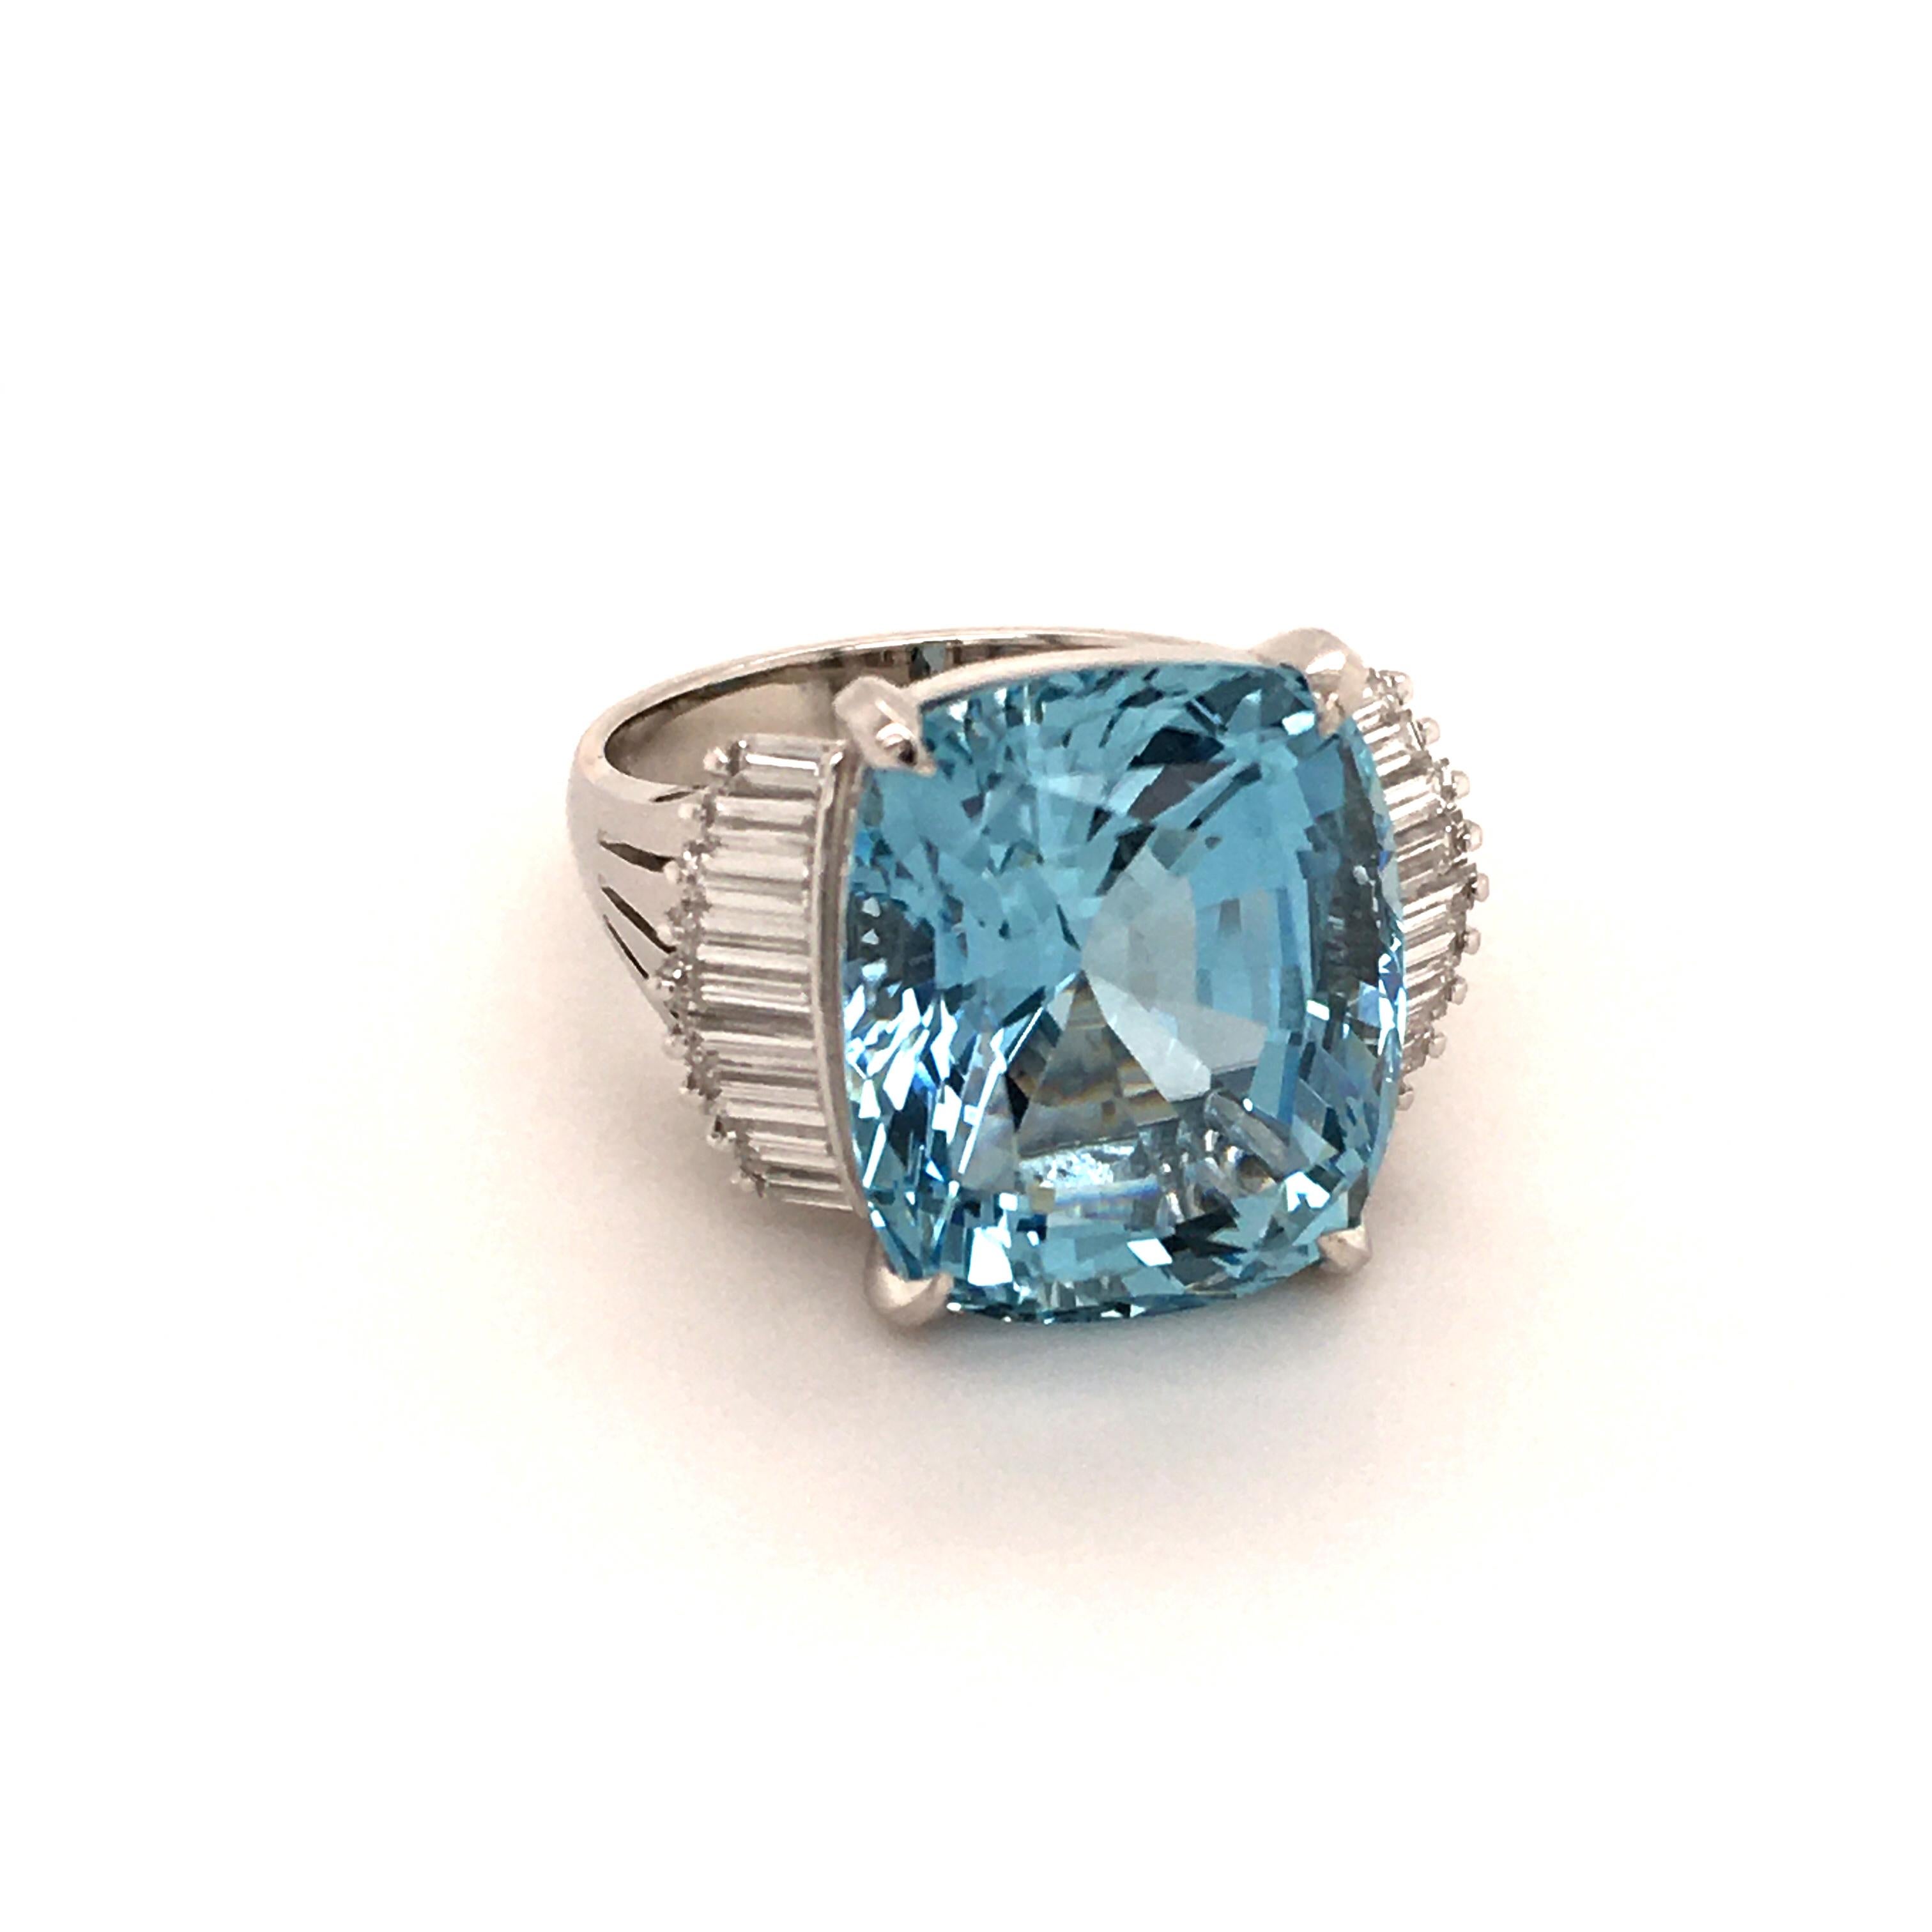 Modern 11.89 Carat Aquamarine Ring with Diamonds in Platinum